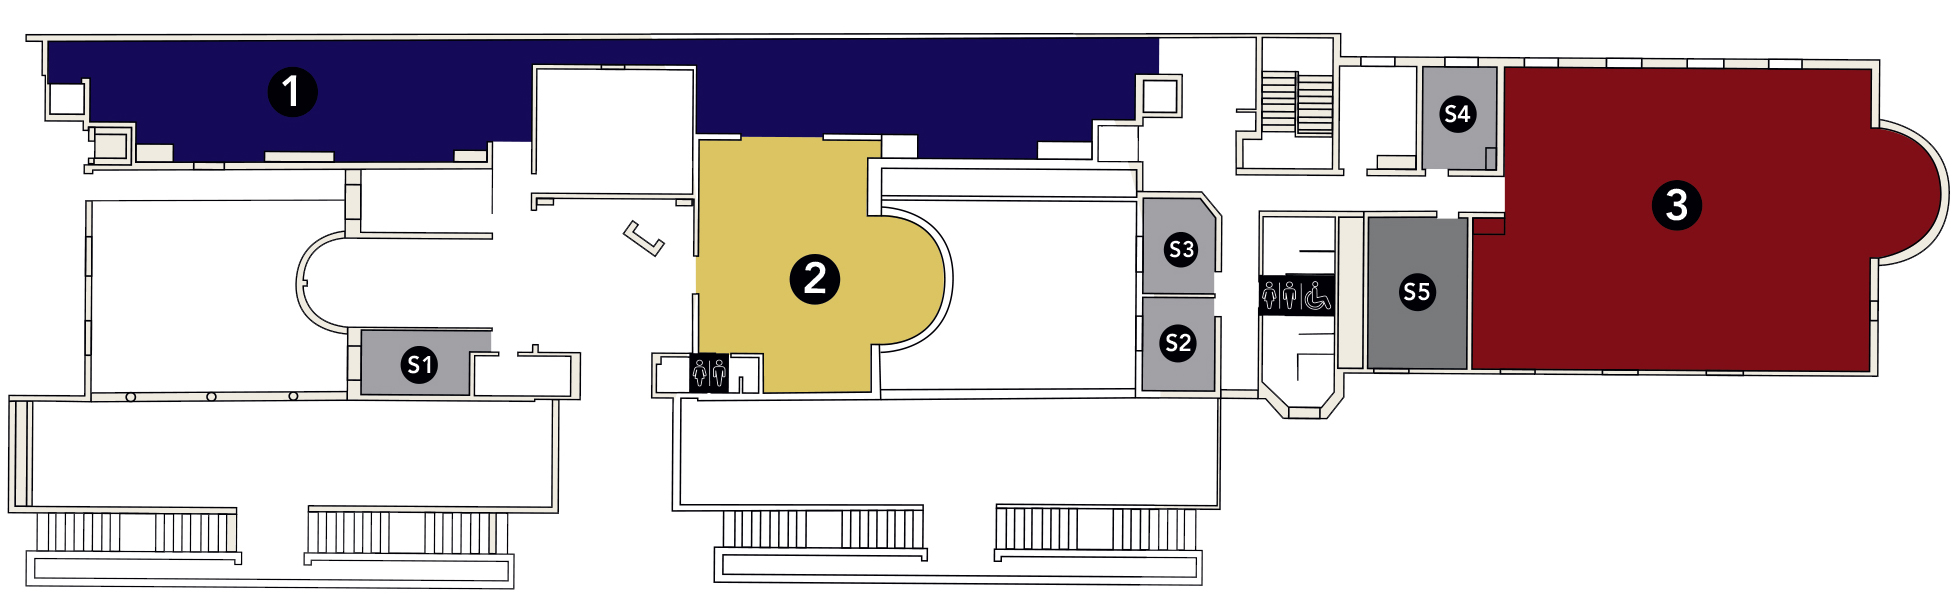 Plan des salles site Monod (vignette)